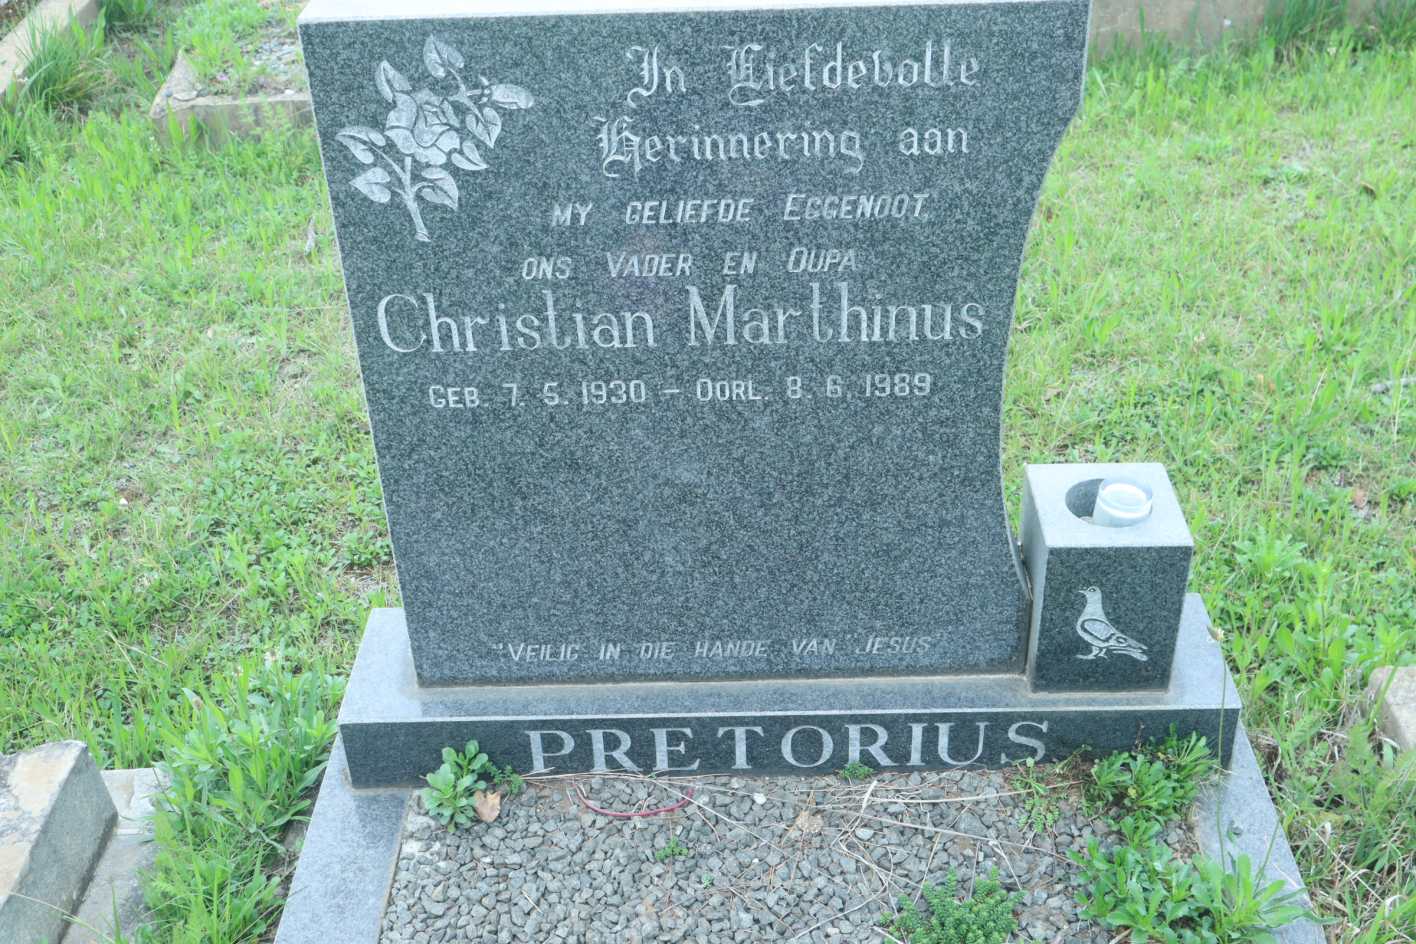 PRETORIUS Christian Marthinus 1930-1989